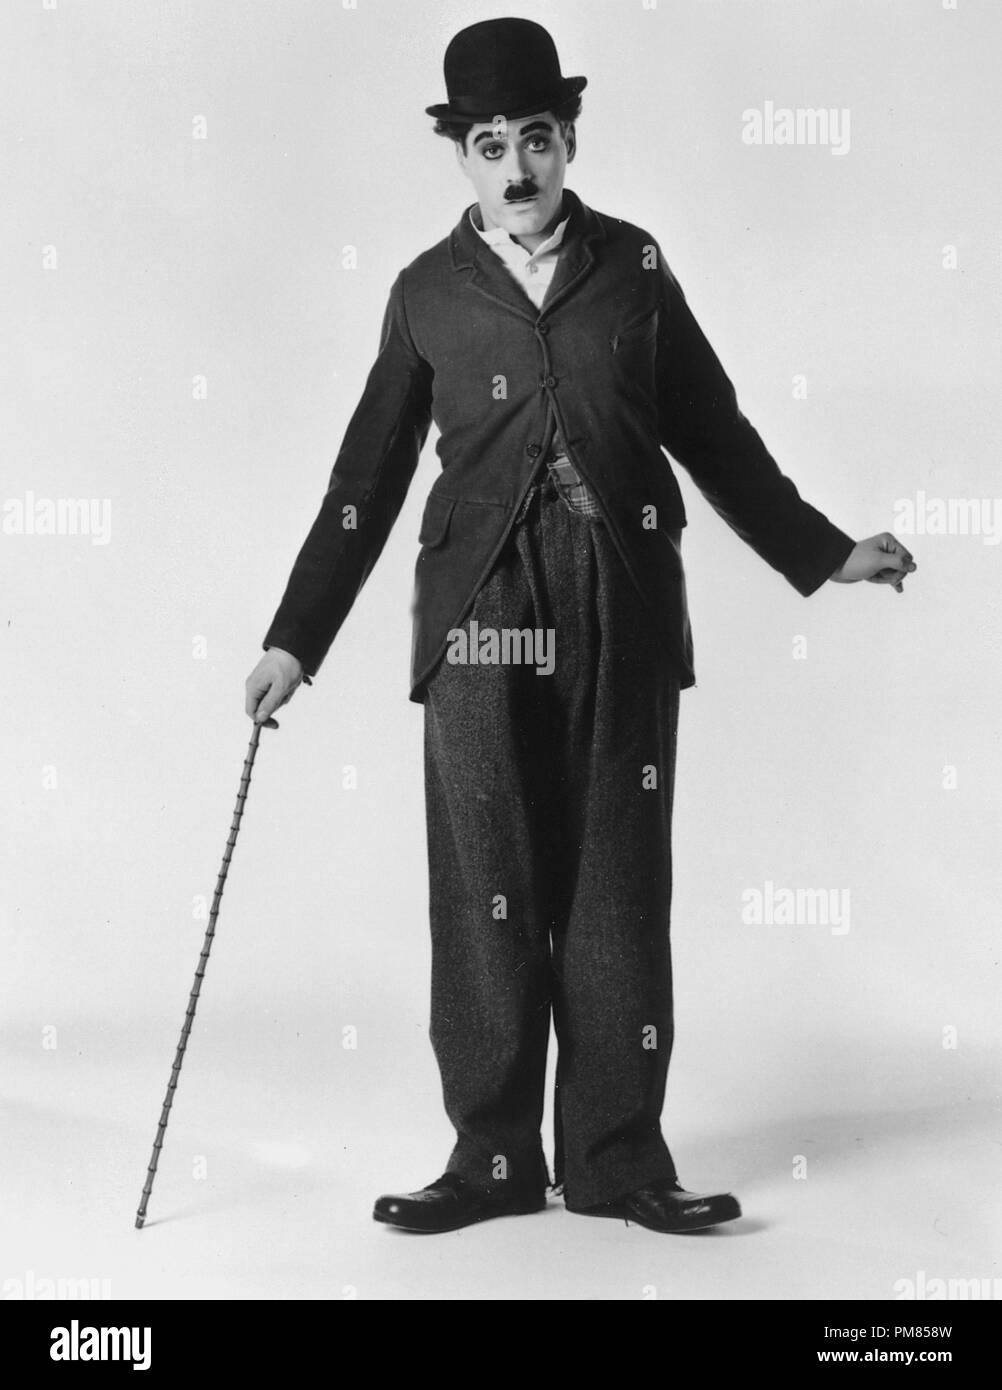 Film Still oder Werbung noch von 'Chaplin' Robert Downey Jr. © 1992 Tri-Star Alle Rechte vorbehalten Datei Referenz # 31487 047 THA für die redaktionelle Nutzung nur Stockfoto